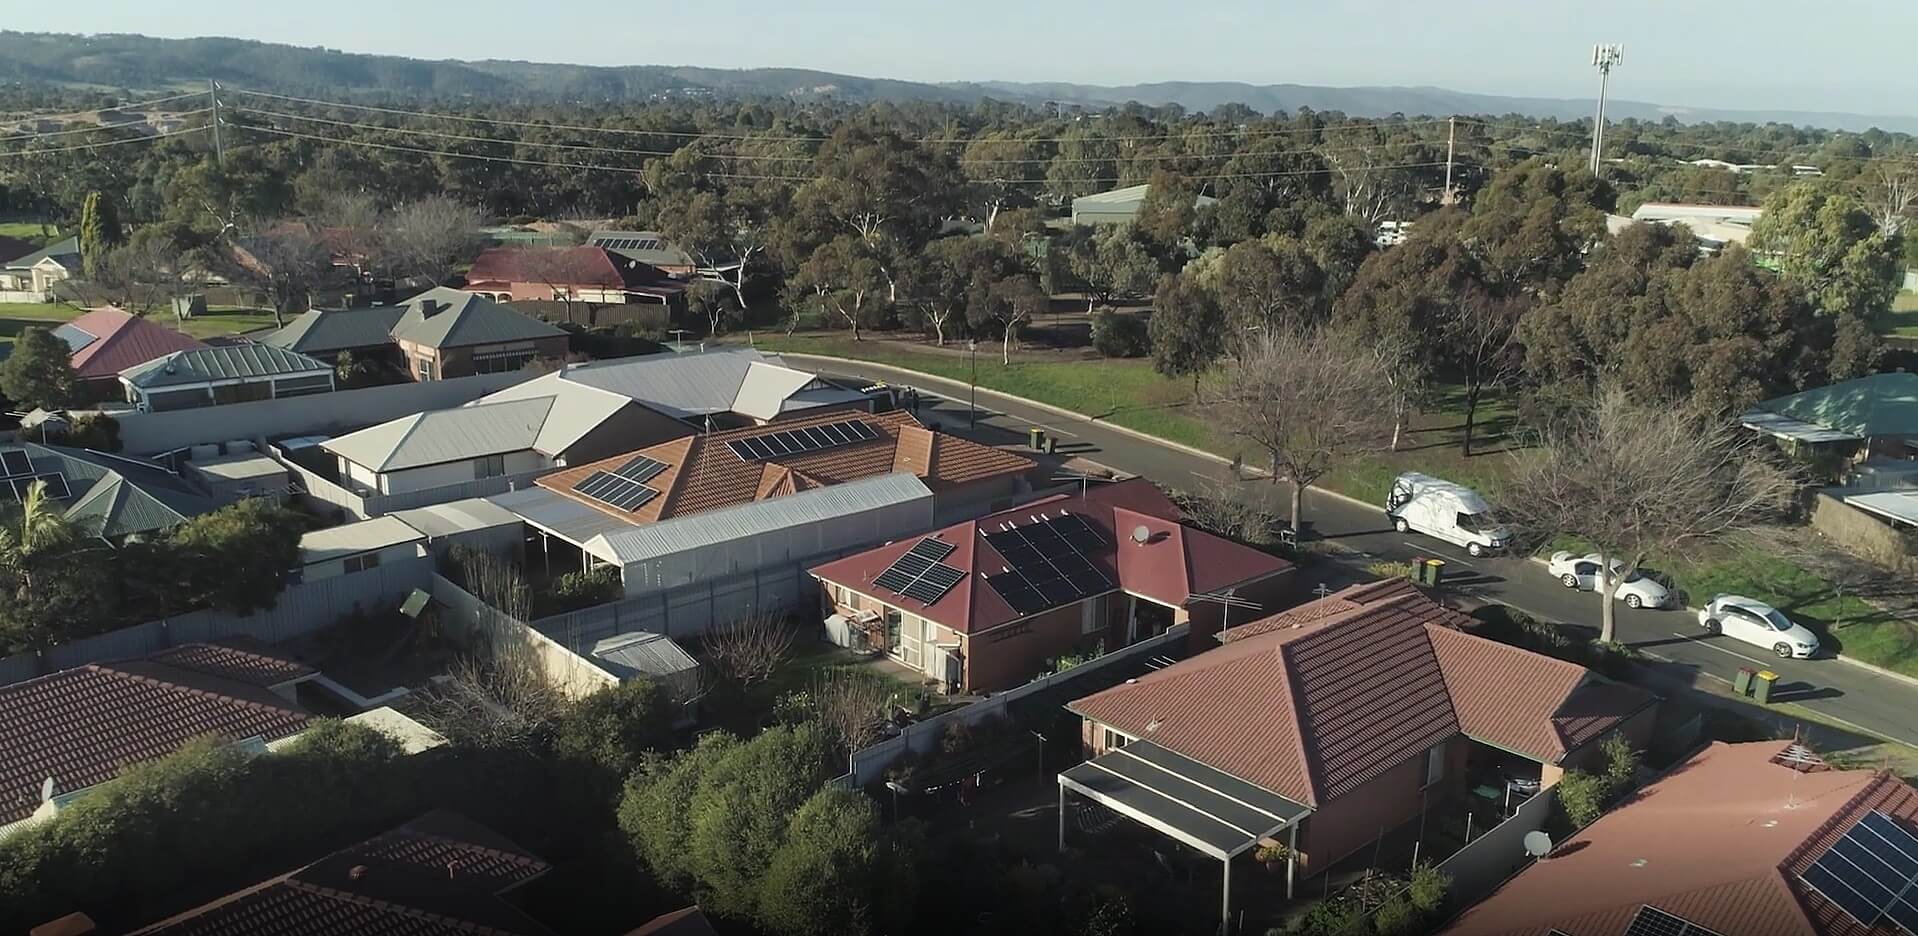 テスラ、南オーストラリア州仮想発電所の第 4 段階を開始